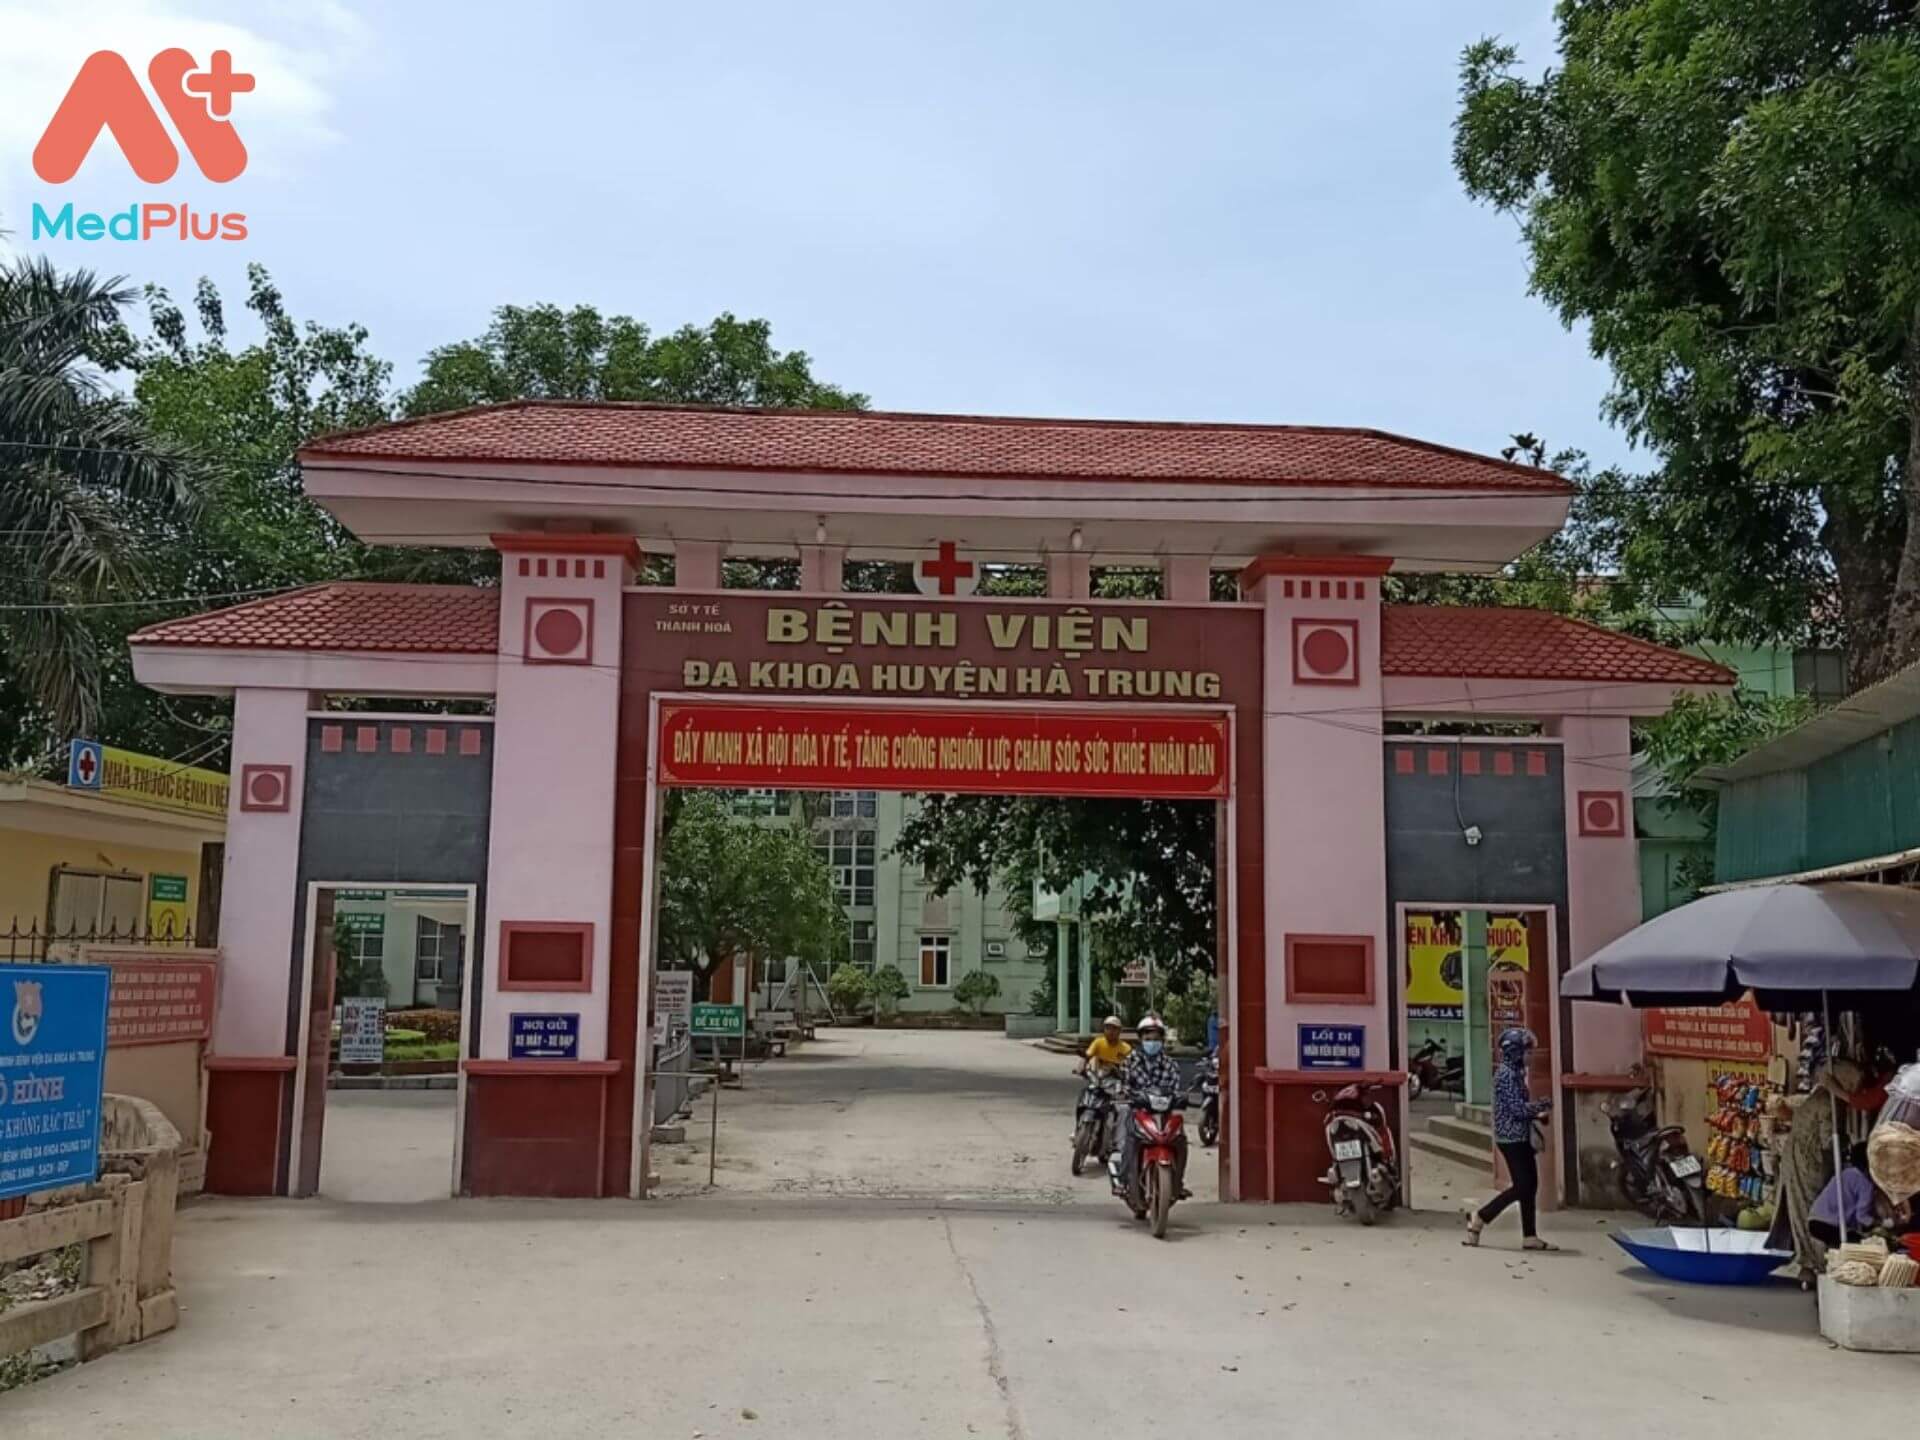 Bệnh viện đa khoa huyện Hà Trung